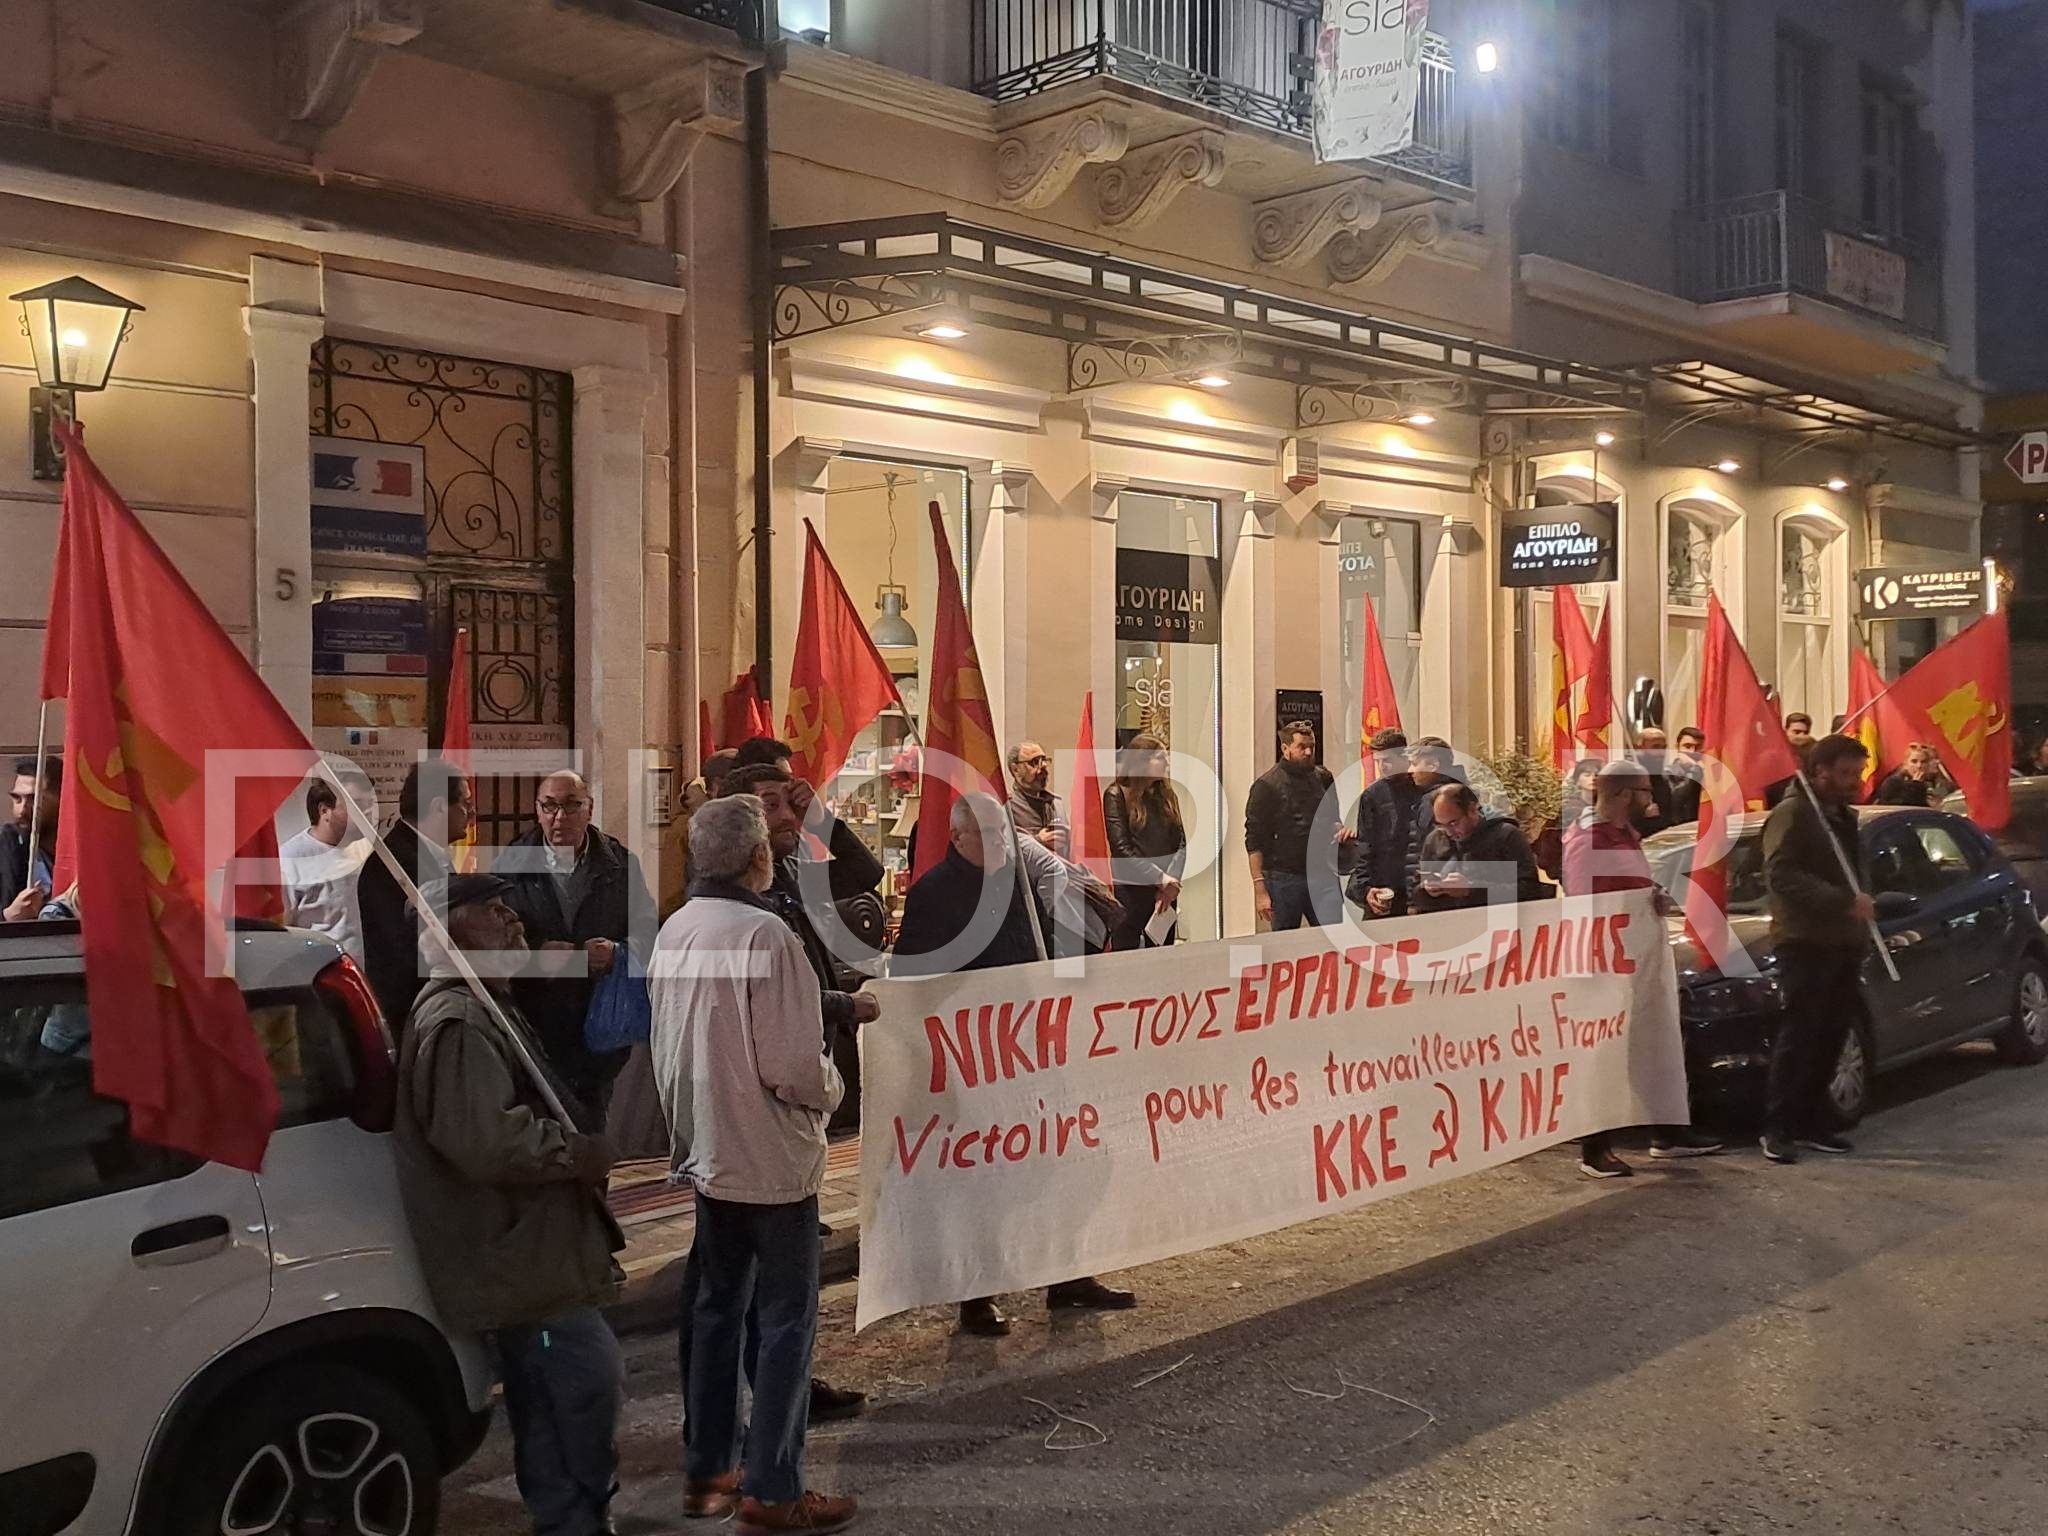 Πάτρα: Συγκέντρωση διαμαρτυρίας και πορεία του ΚΚΕ Αχαΐας έξω από το Γαλλικό Προξενείο για τους εργαζόμενους της Γαλλίας ΦΩΤΟ